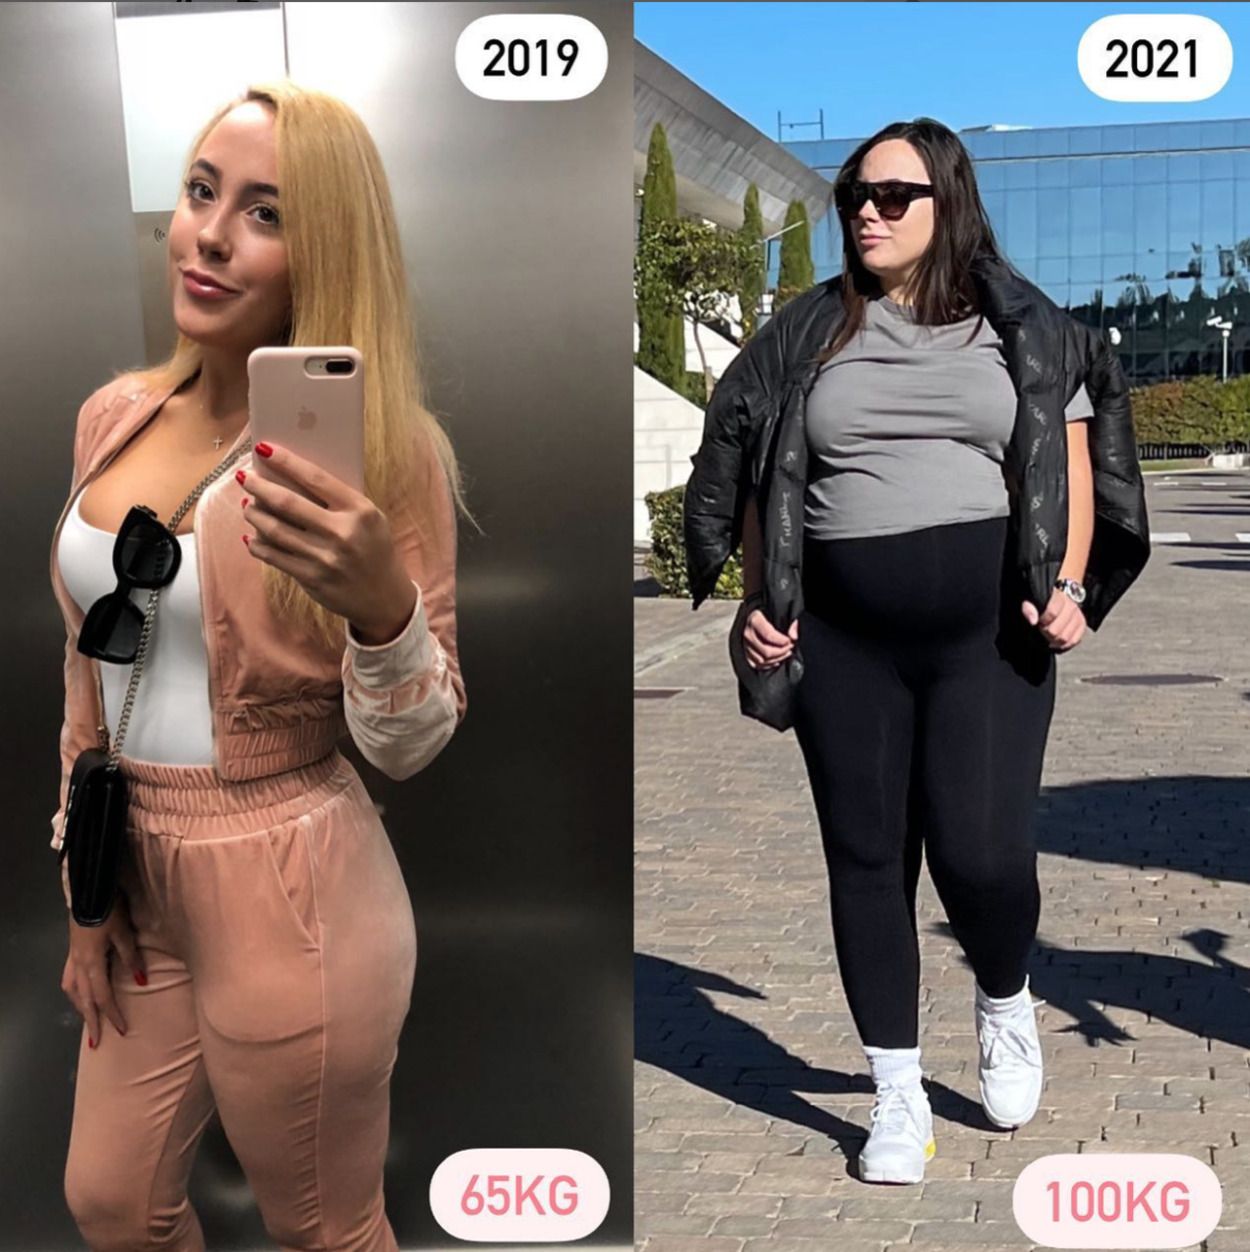 El gran cambio de Ivana, la hermana de Georgina Rodríguez, de 65 a 100 kilos: "Ese fue mi límite"